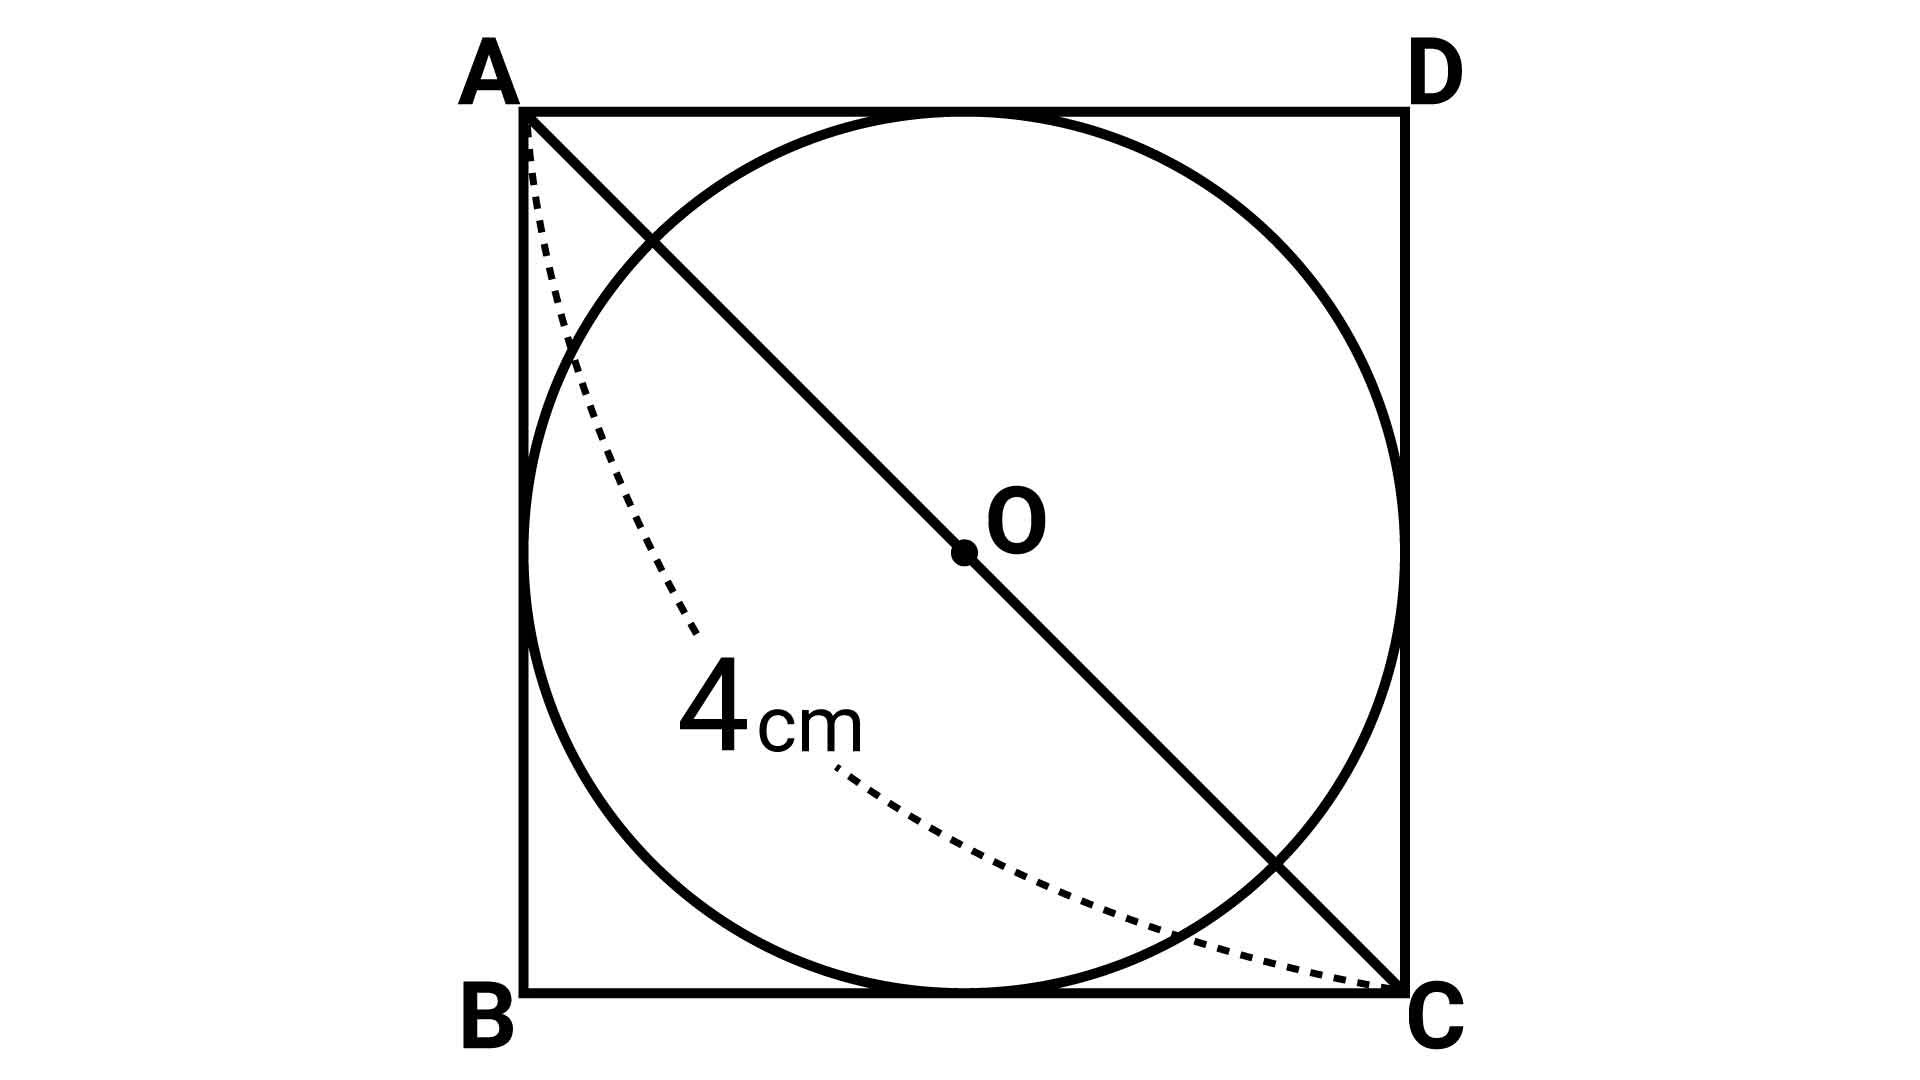 小学6年生の知識で解ける 円の面積 の問題 あなたは解けますか